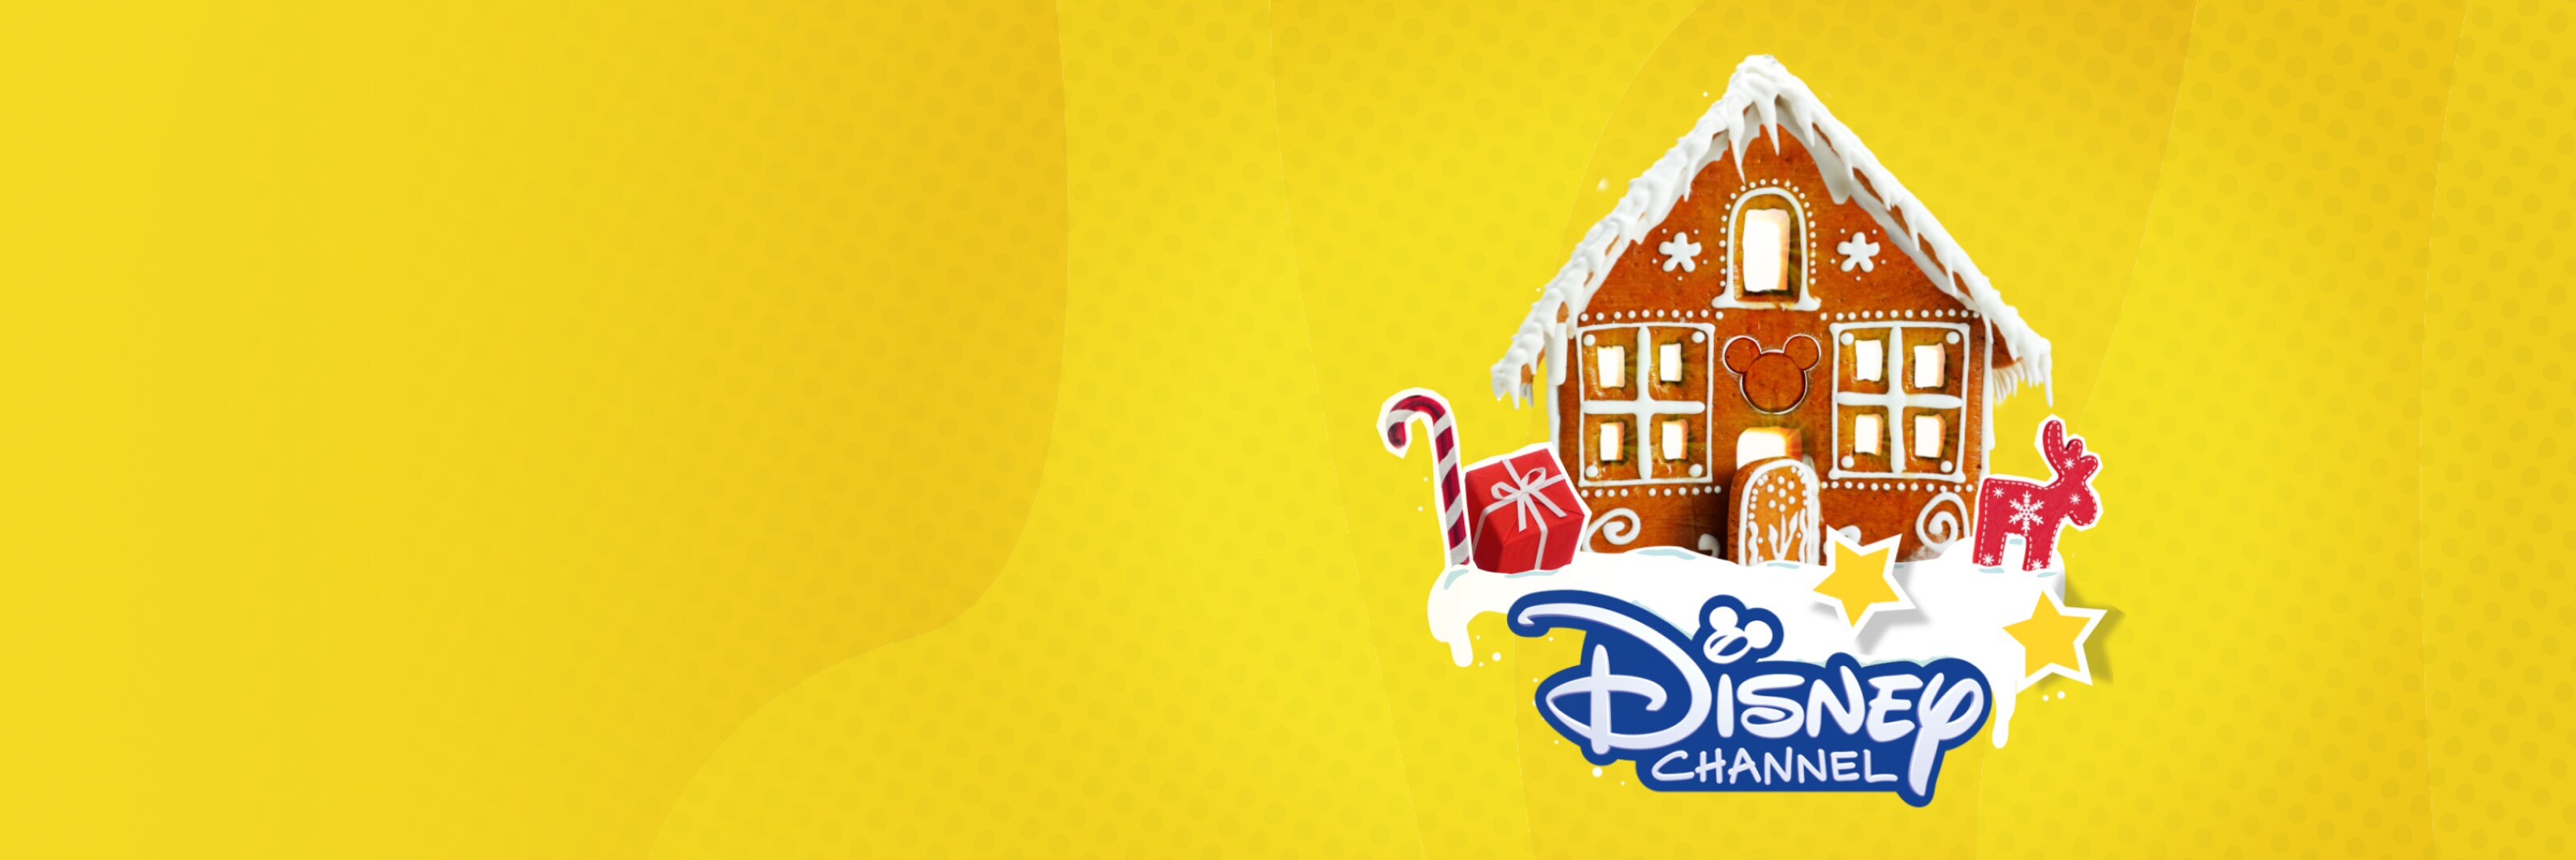 Disney Channel Weihnachten Programm